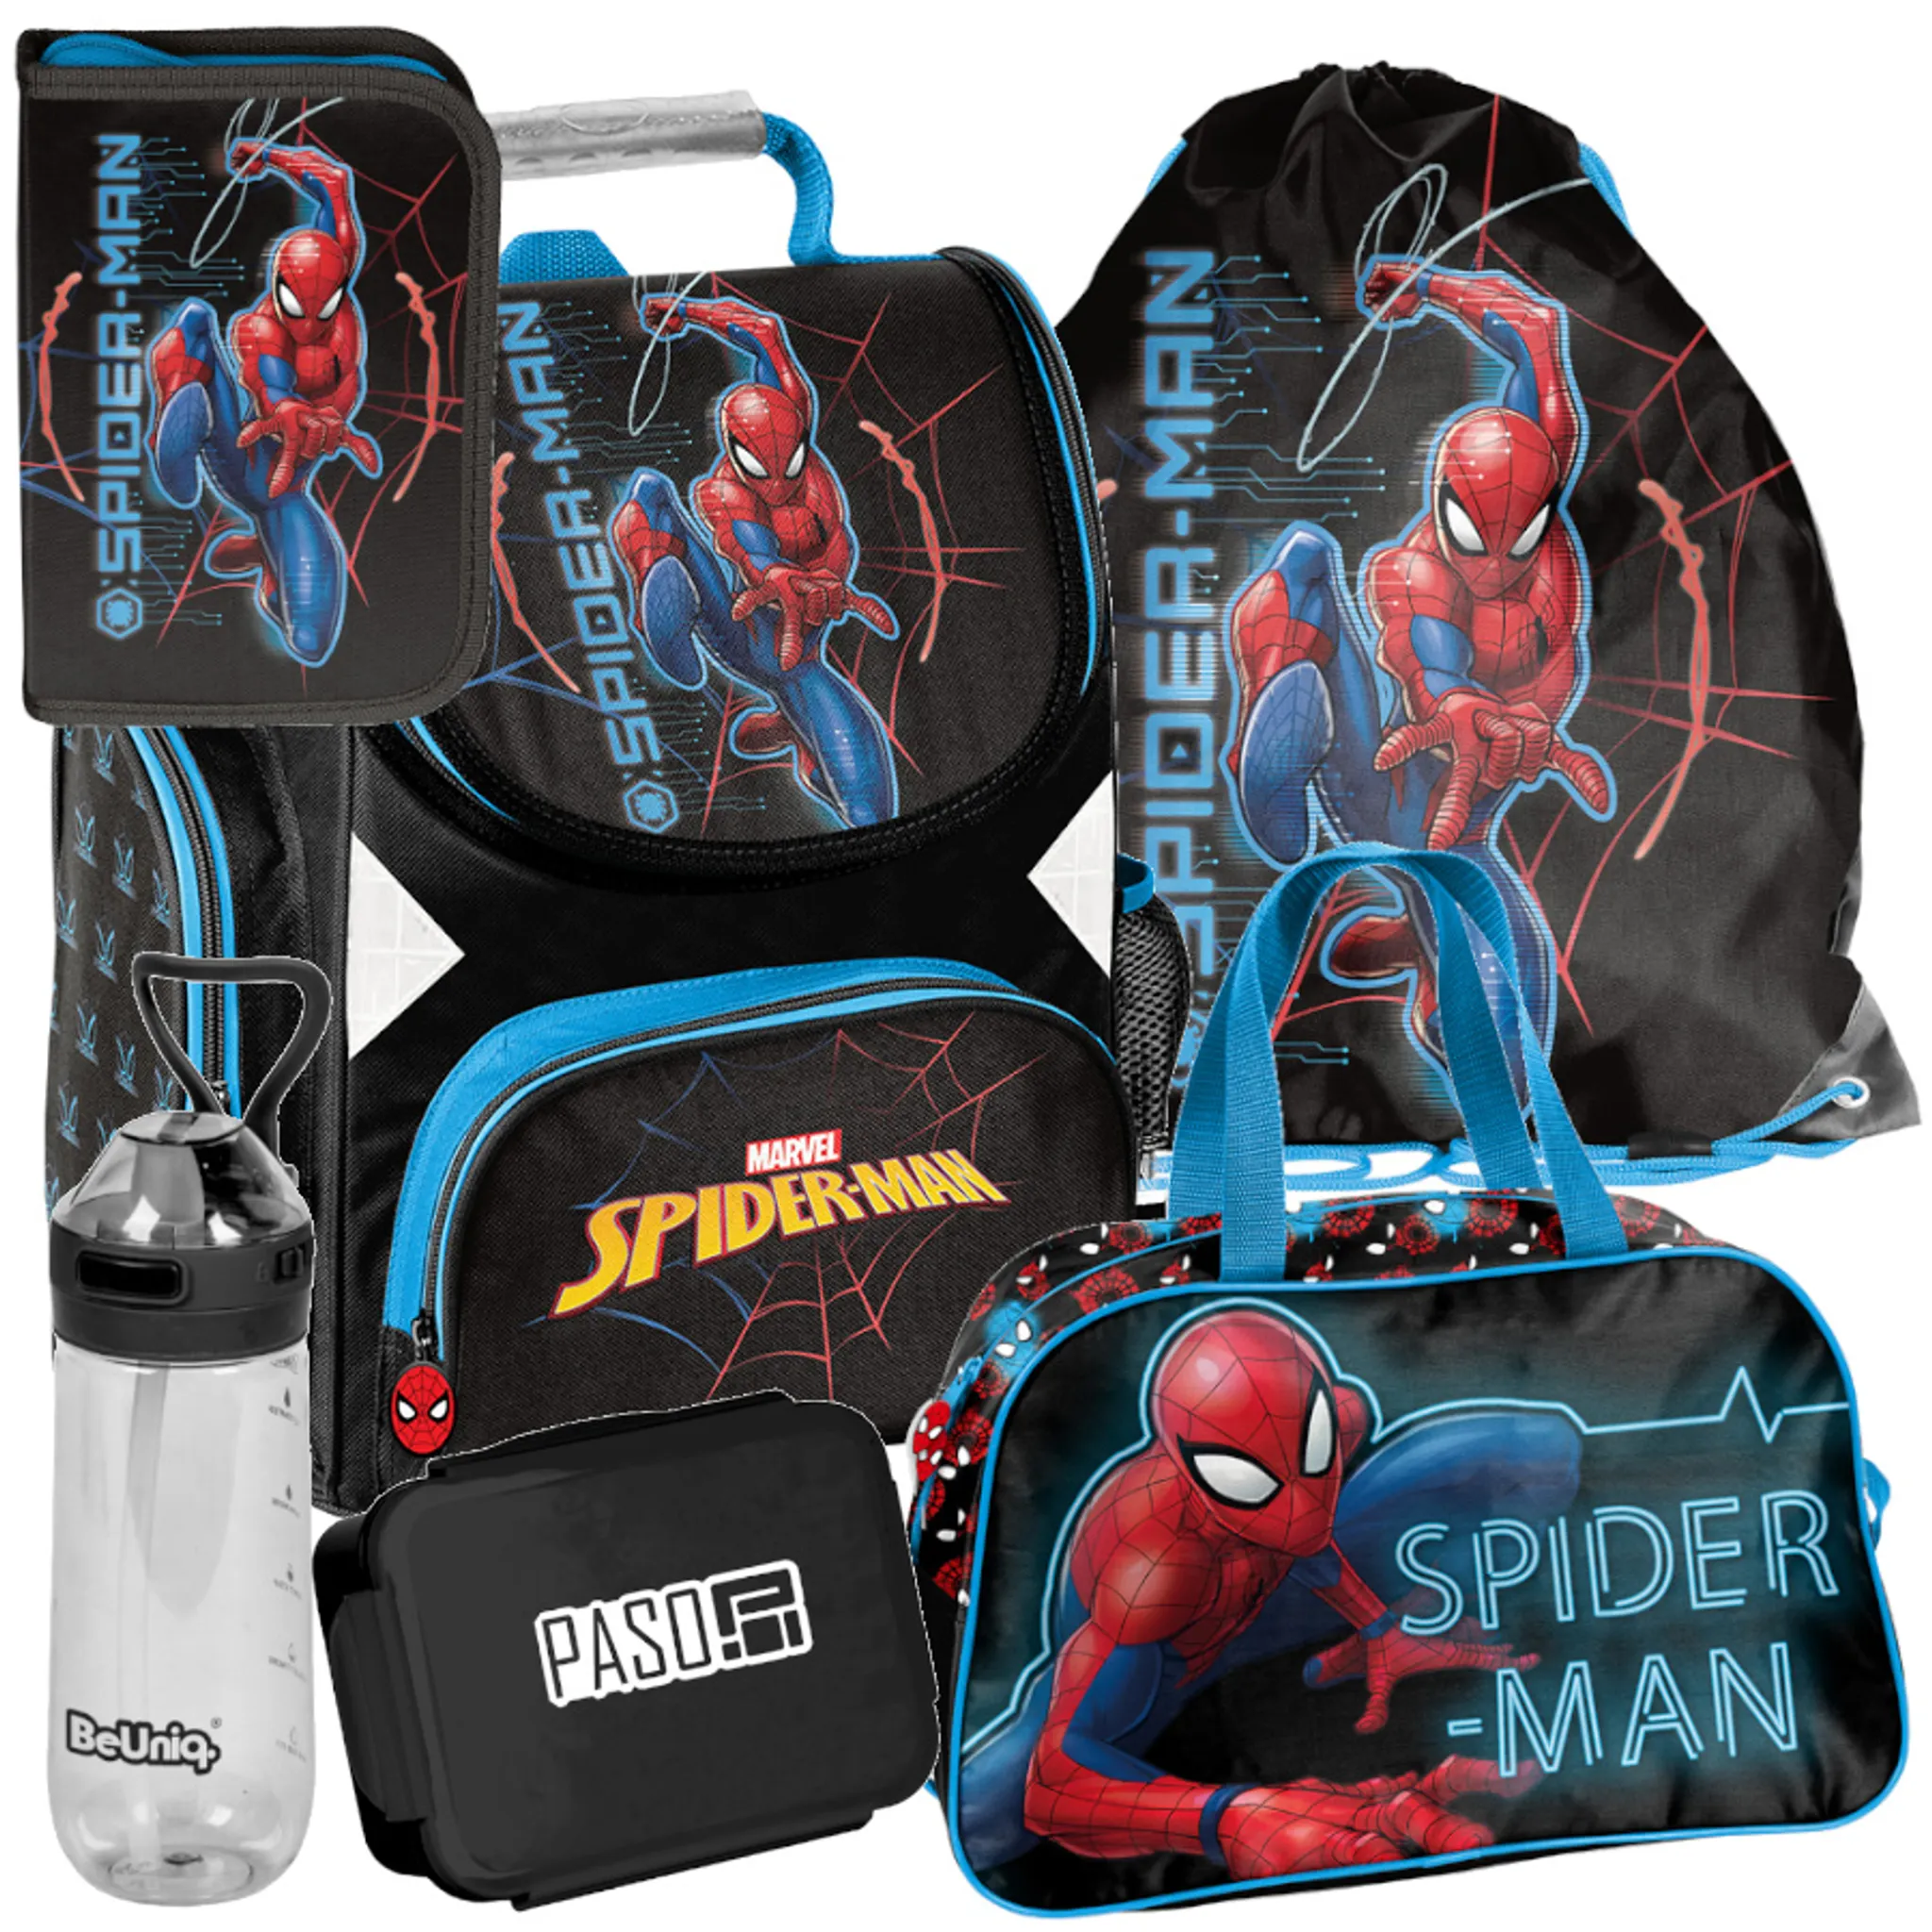 2 TLG. Set Sonnenschutz - Ultimate Spider-Man - für Seitenscheibe